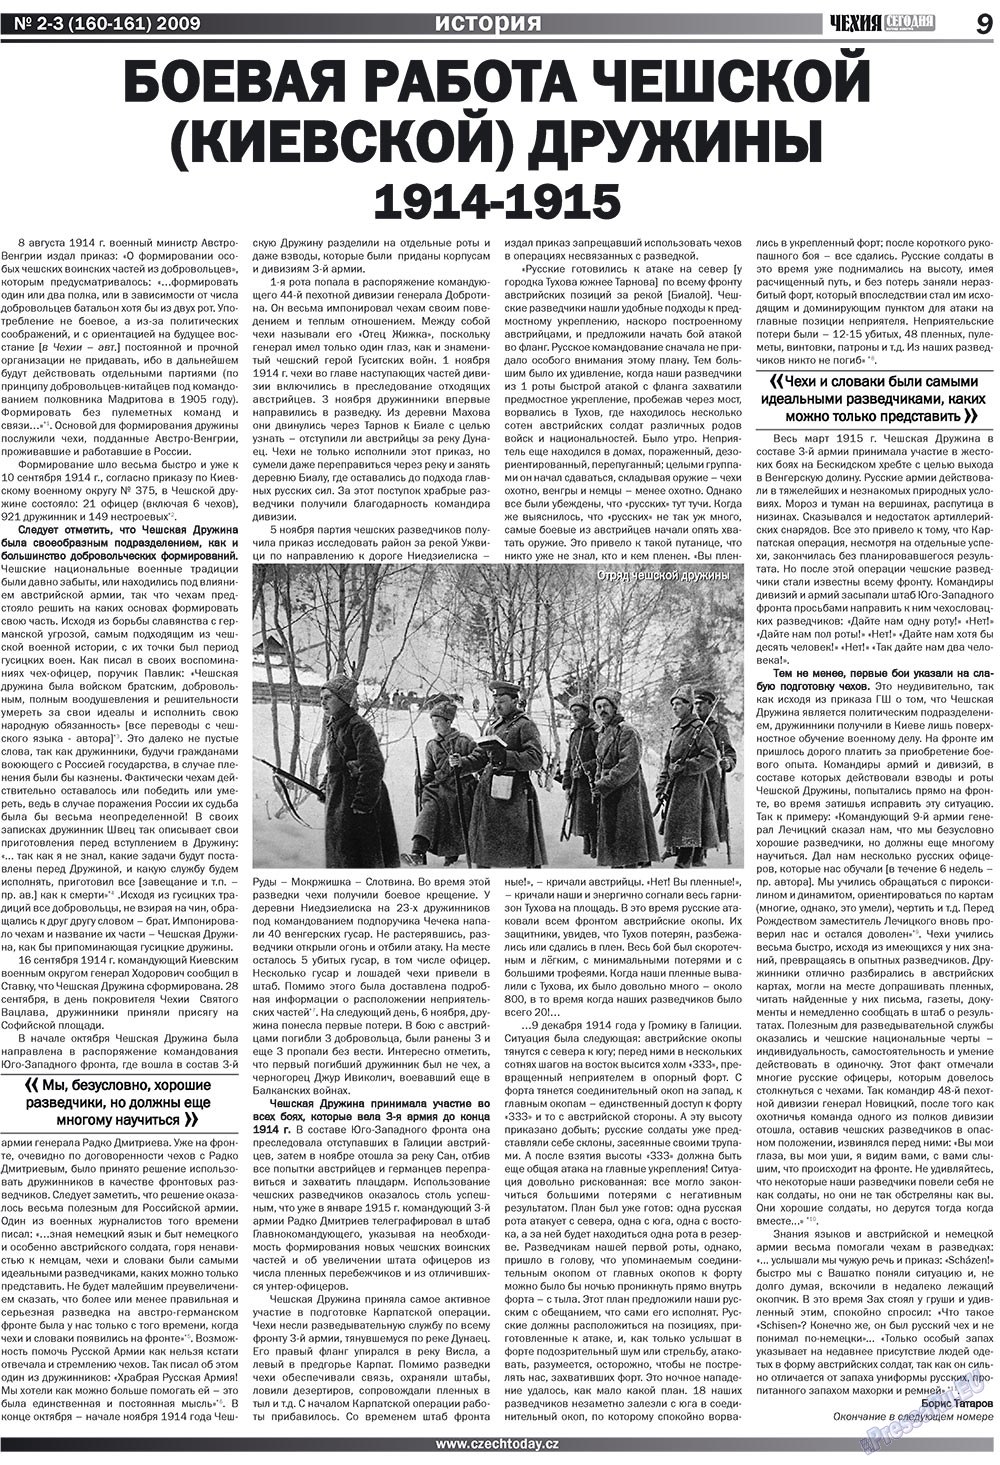 Чехия сегодня, журнал. 2009 №2 стр.9